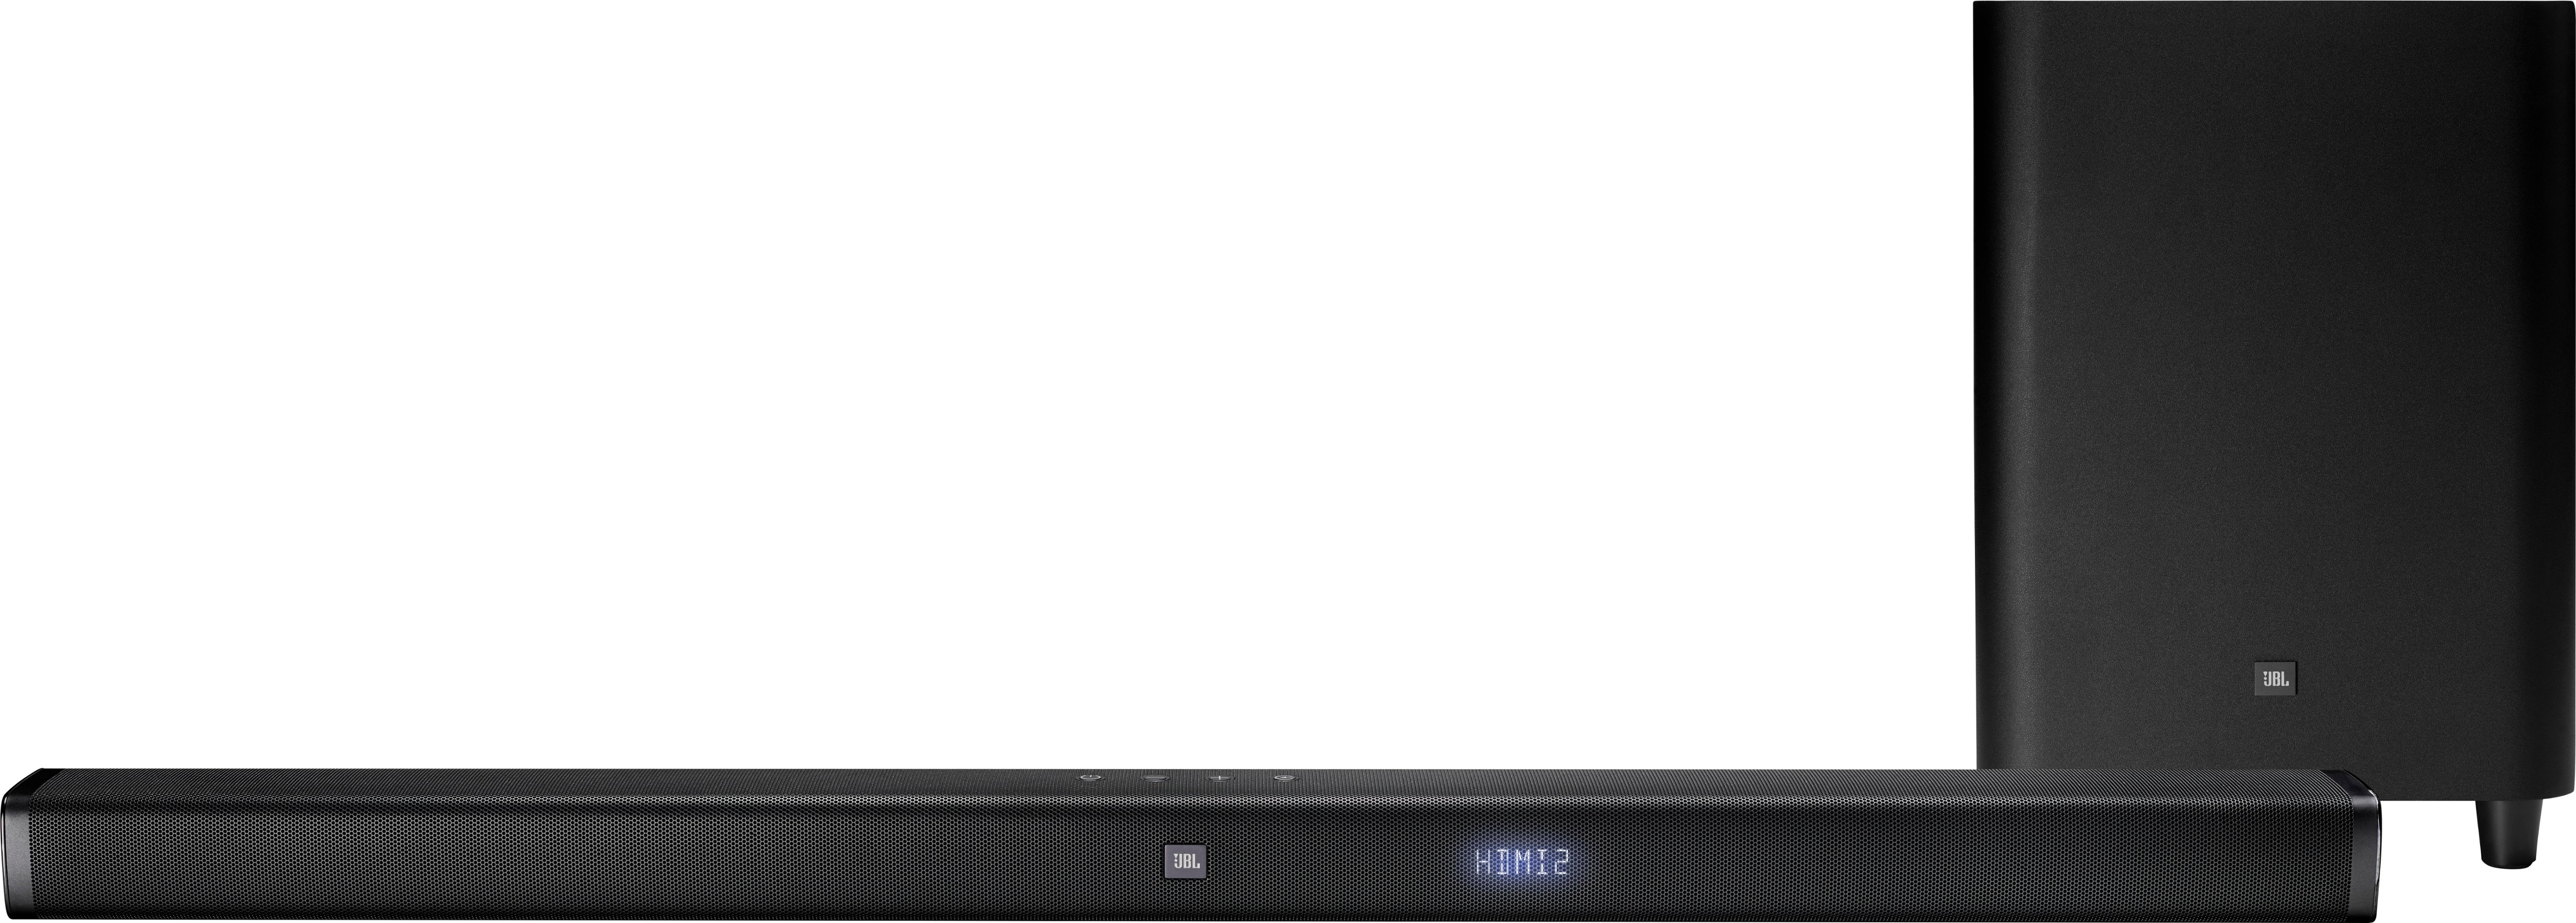 Jbl 3 1 Channel Soundbar System With 10 Wireless Subwoofer And Digital Amplifier Black Jblbar31blkam Best Buy